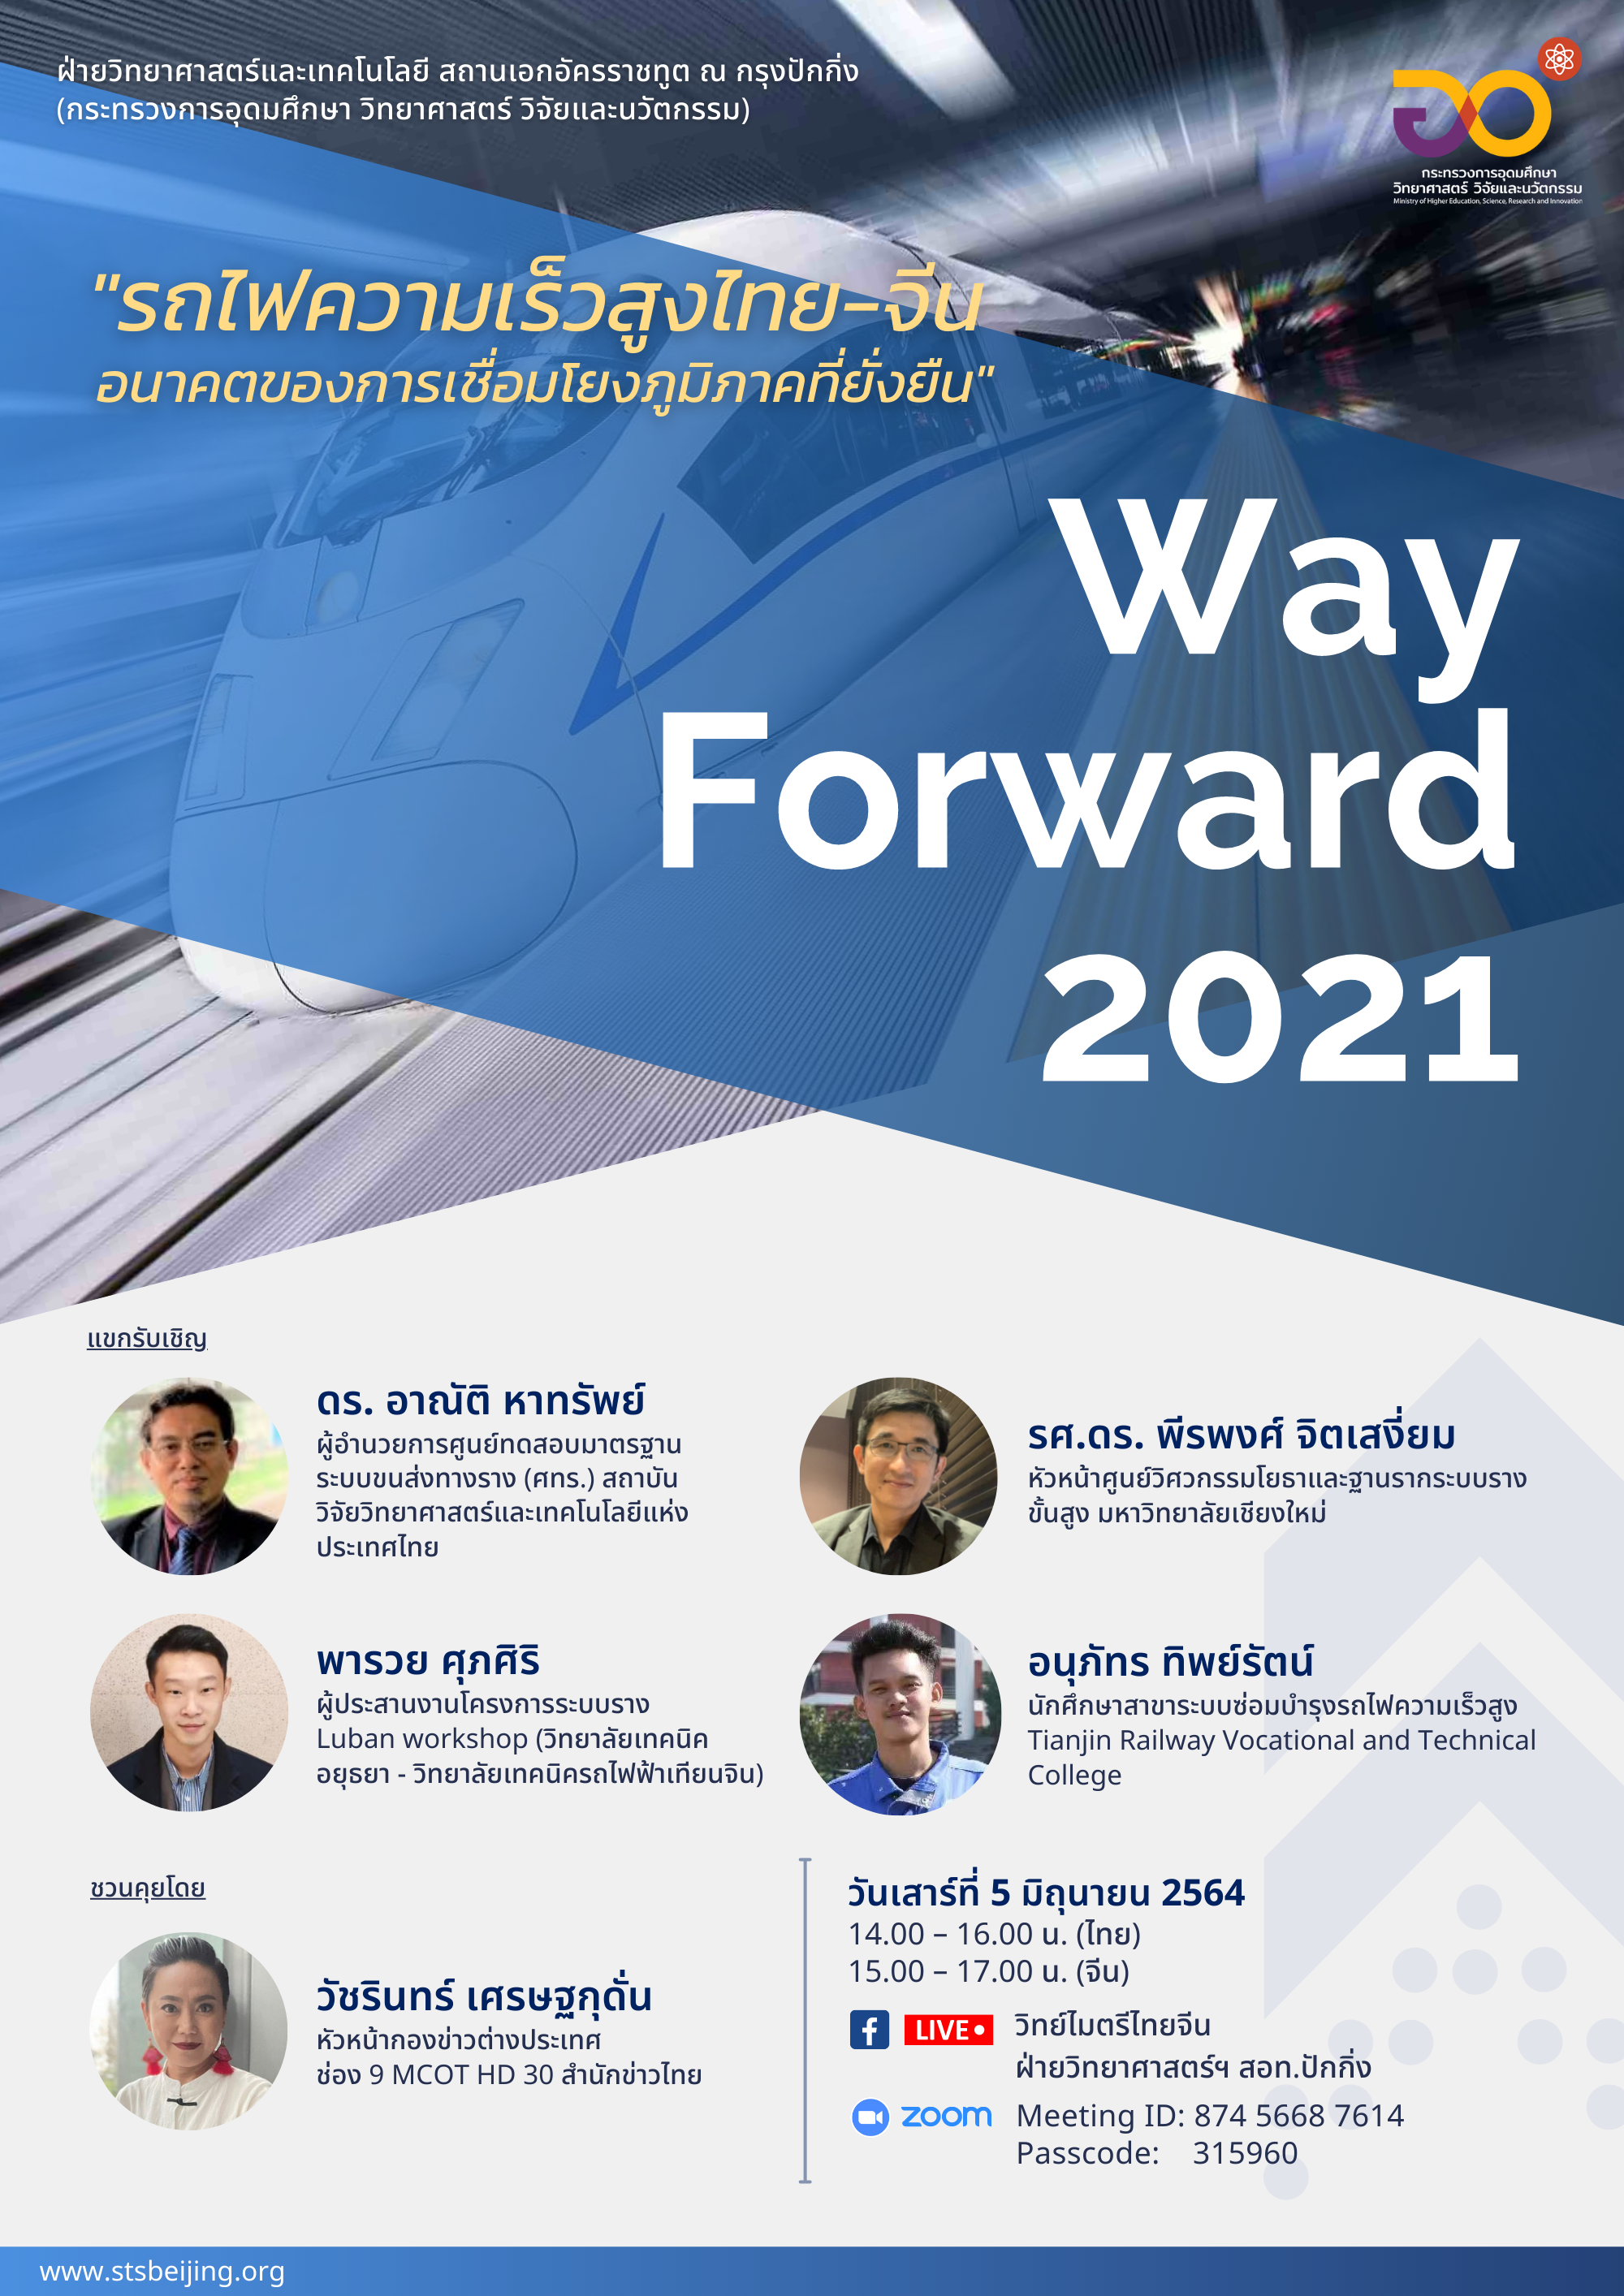 Way Forward 2021 ครั้งที่ 8 “รถไฟความเร็วสูงไทย-จีน อนาคตของการเชื่อมโยงภูมิภาคที่ยั่งยืน”